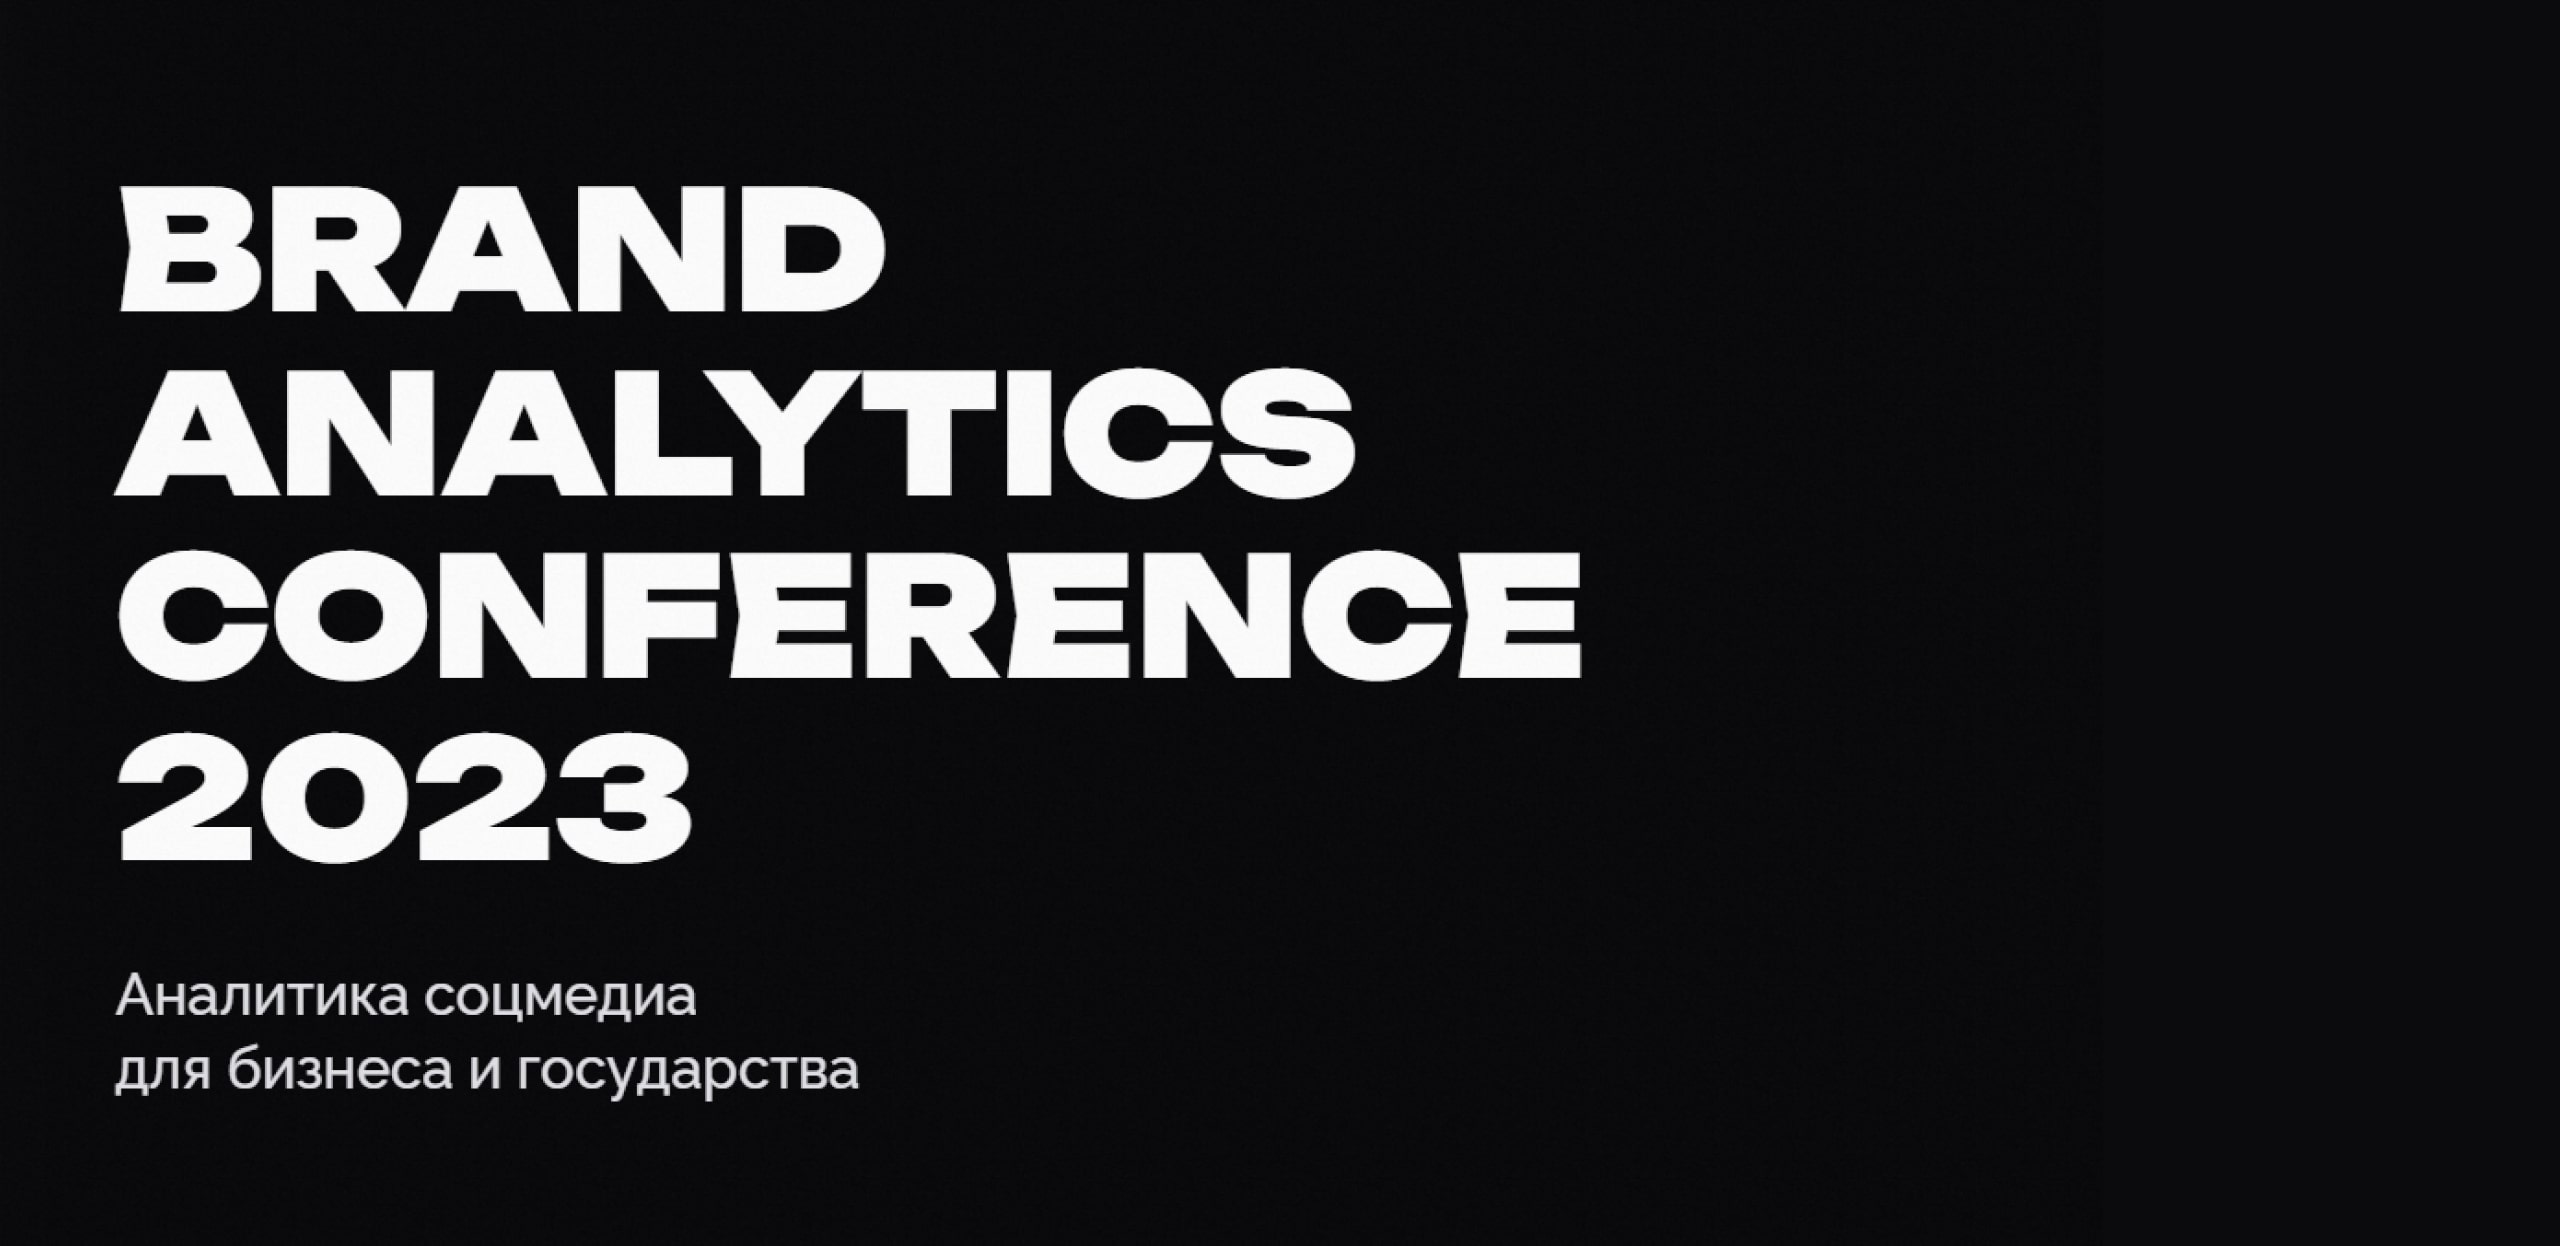 ОК расскажут о перезапуске контентных сервисов на Brand Analytics Conference 2023. Скидка на билет внутри